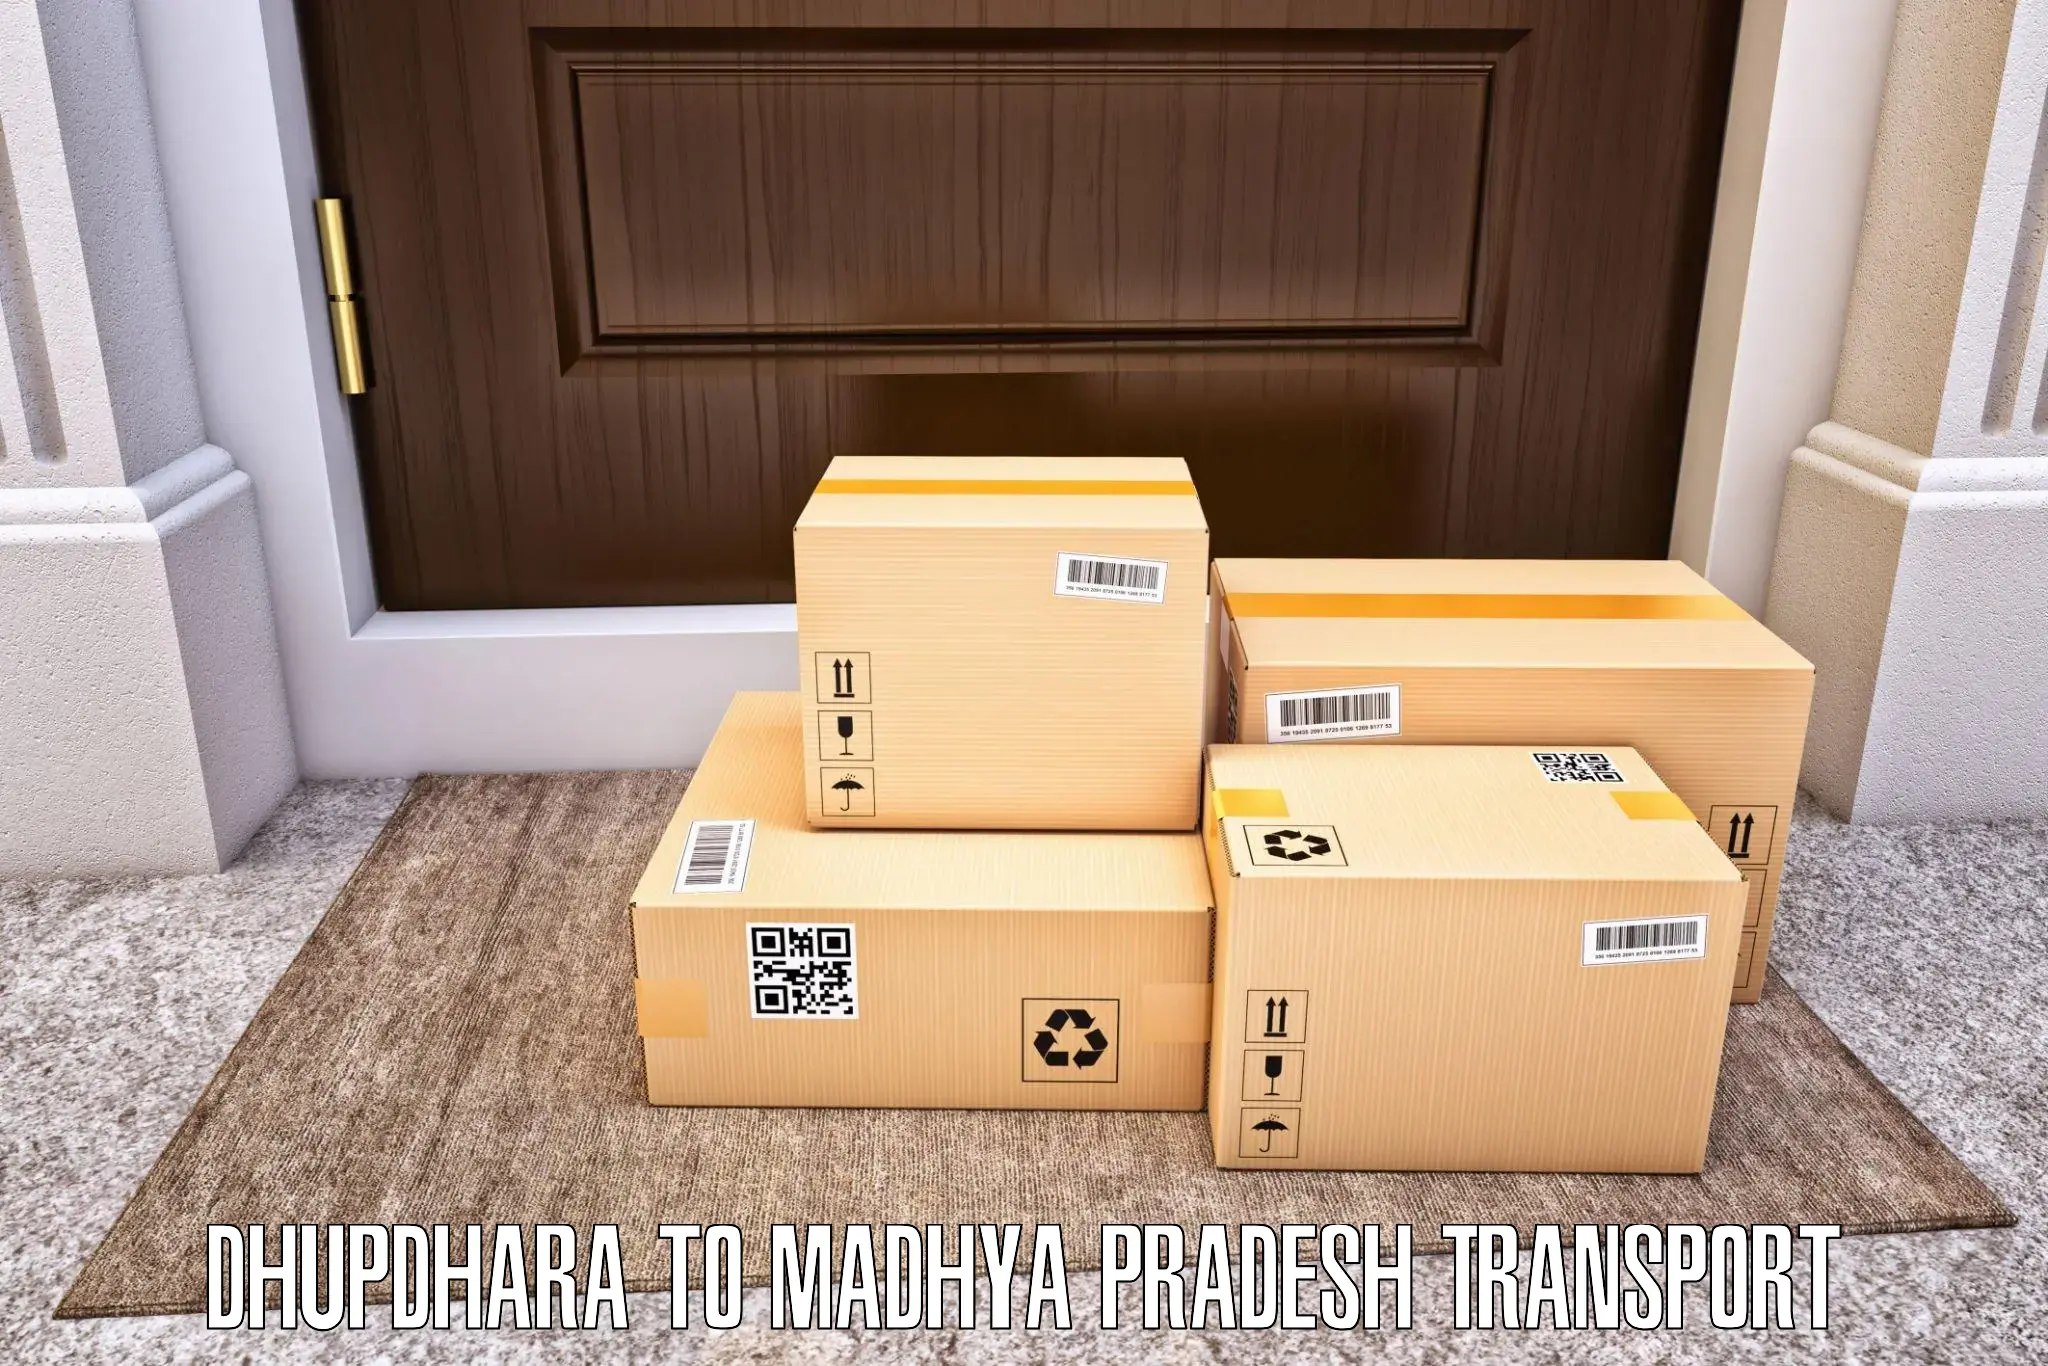 Road transport online services Dhupdhara to Sendhwa